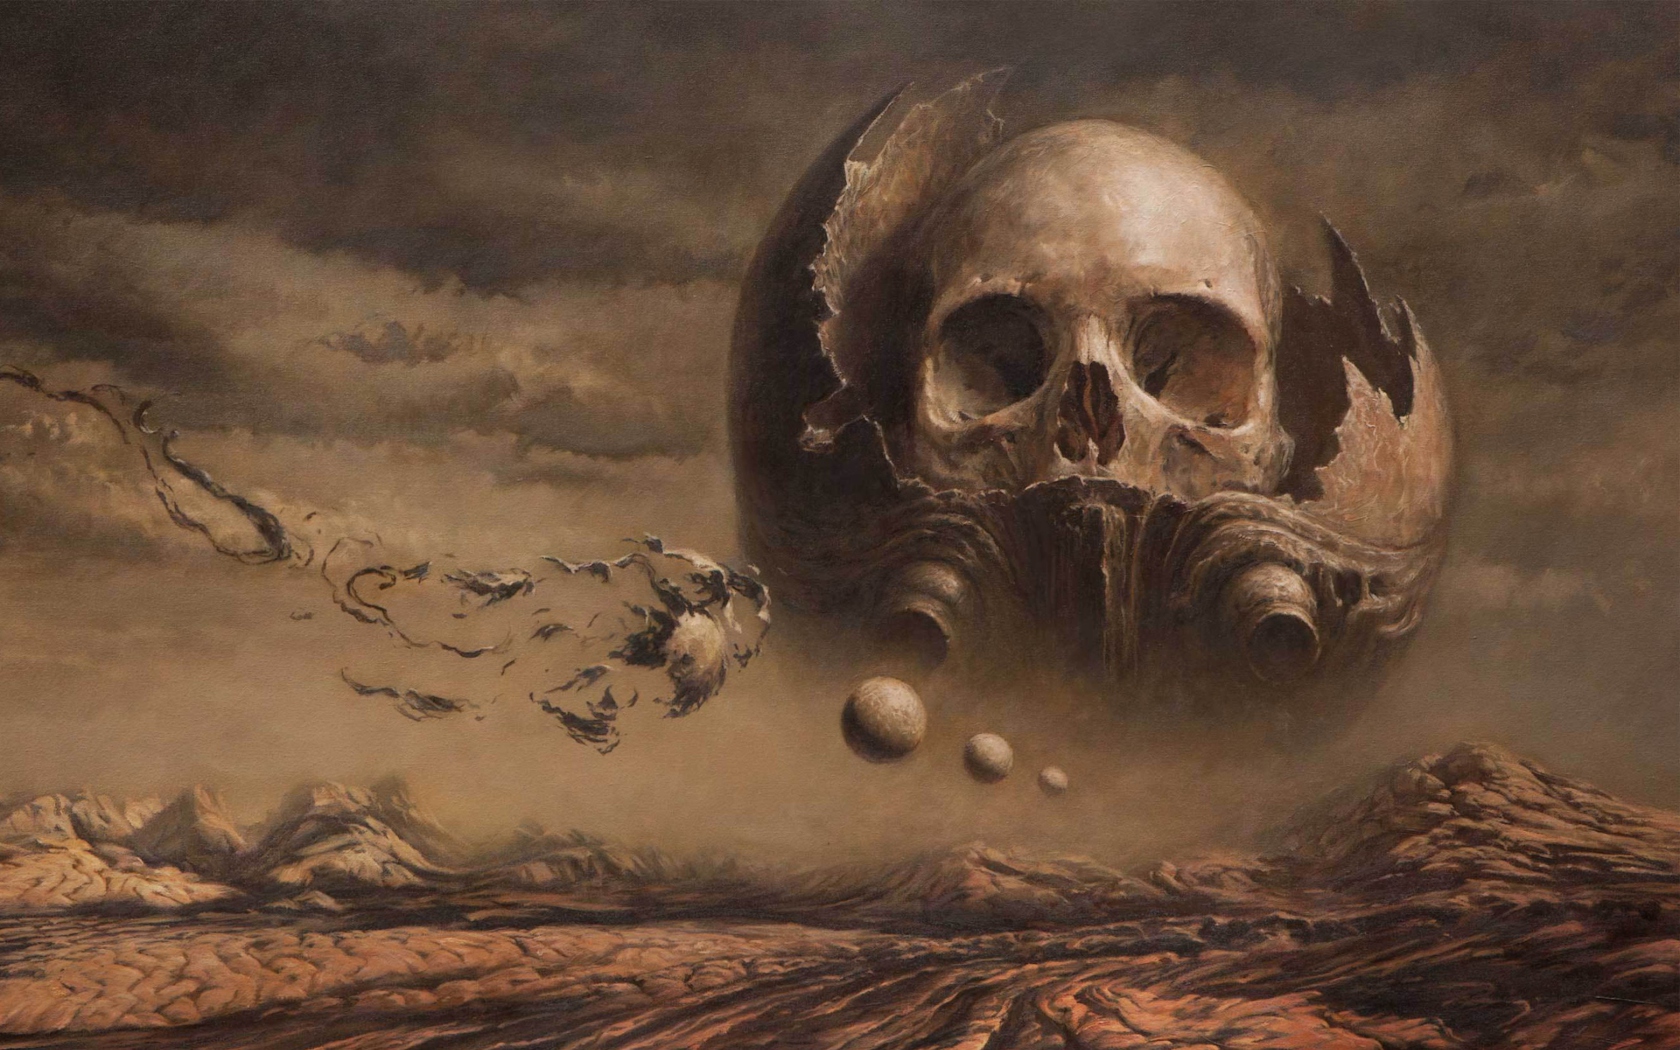 Skull Desert wallpaper 1680x1050